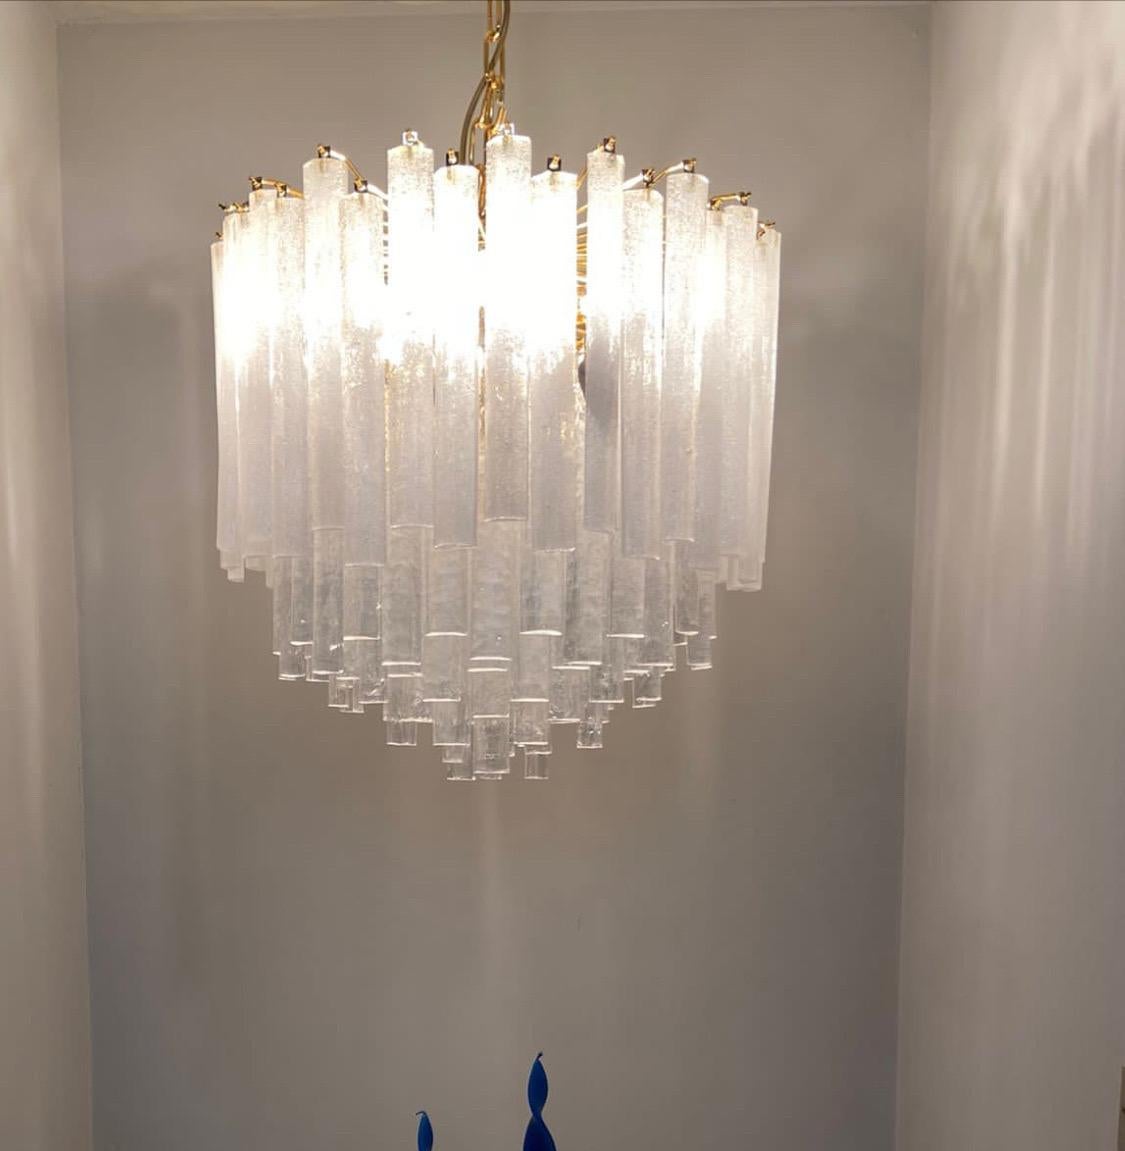 Ein hochwertiger Murano-Glas-Kronleuchter, der in den siebziger Jahren von Mazzega in Italien entworfen und hergestellt wurde. Der Kronleuchter stammt aus einem bedeutenden Beleuchtungsgeschäft, das sein Geschäft aufgab, daher wurde er nie in einer